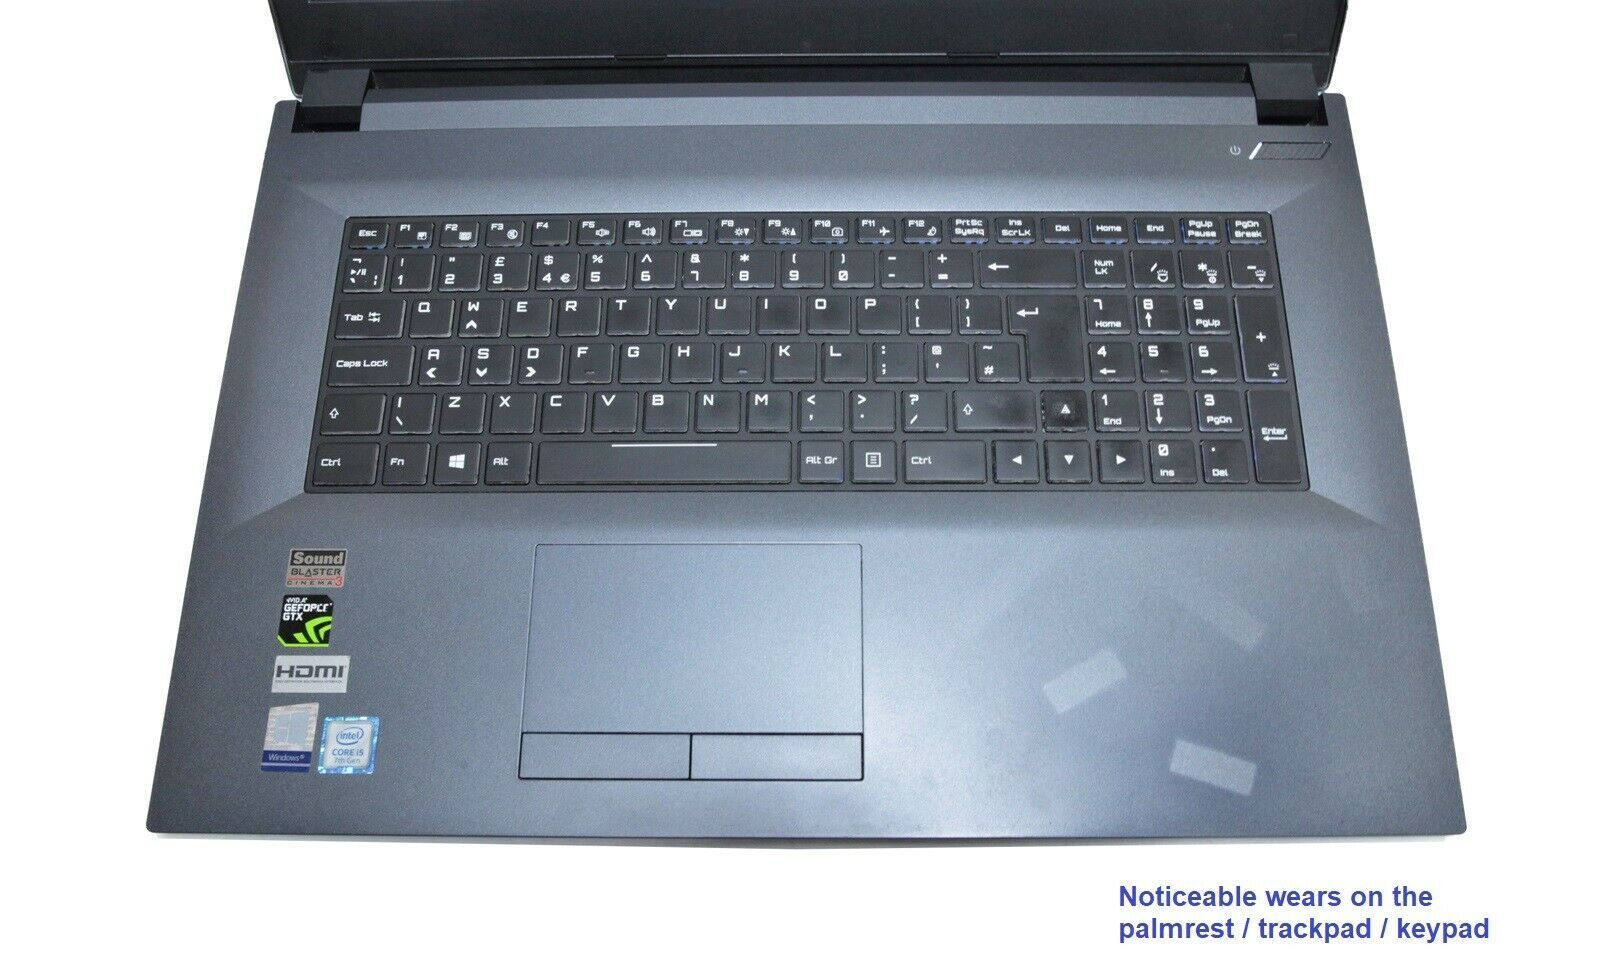 Clevo N870HP 17.3" Gaming Laptop: GTX 1060, Core i5 Quad, 240GB SSD+HDD - CruiseTech